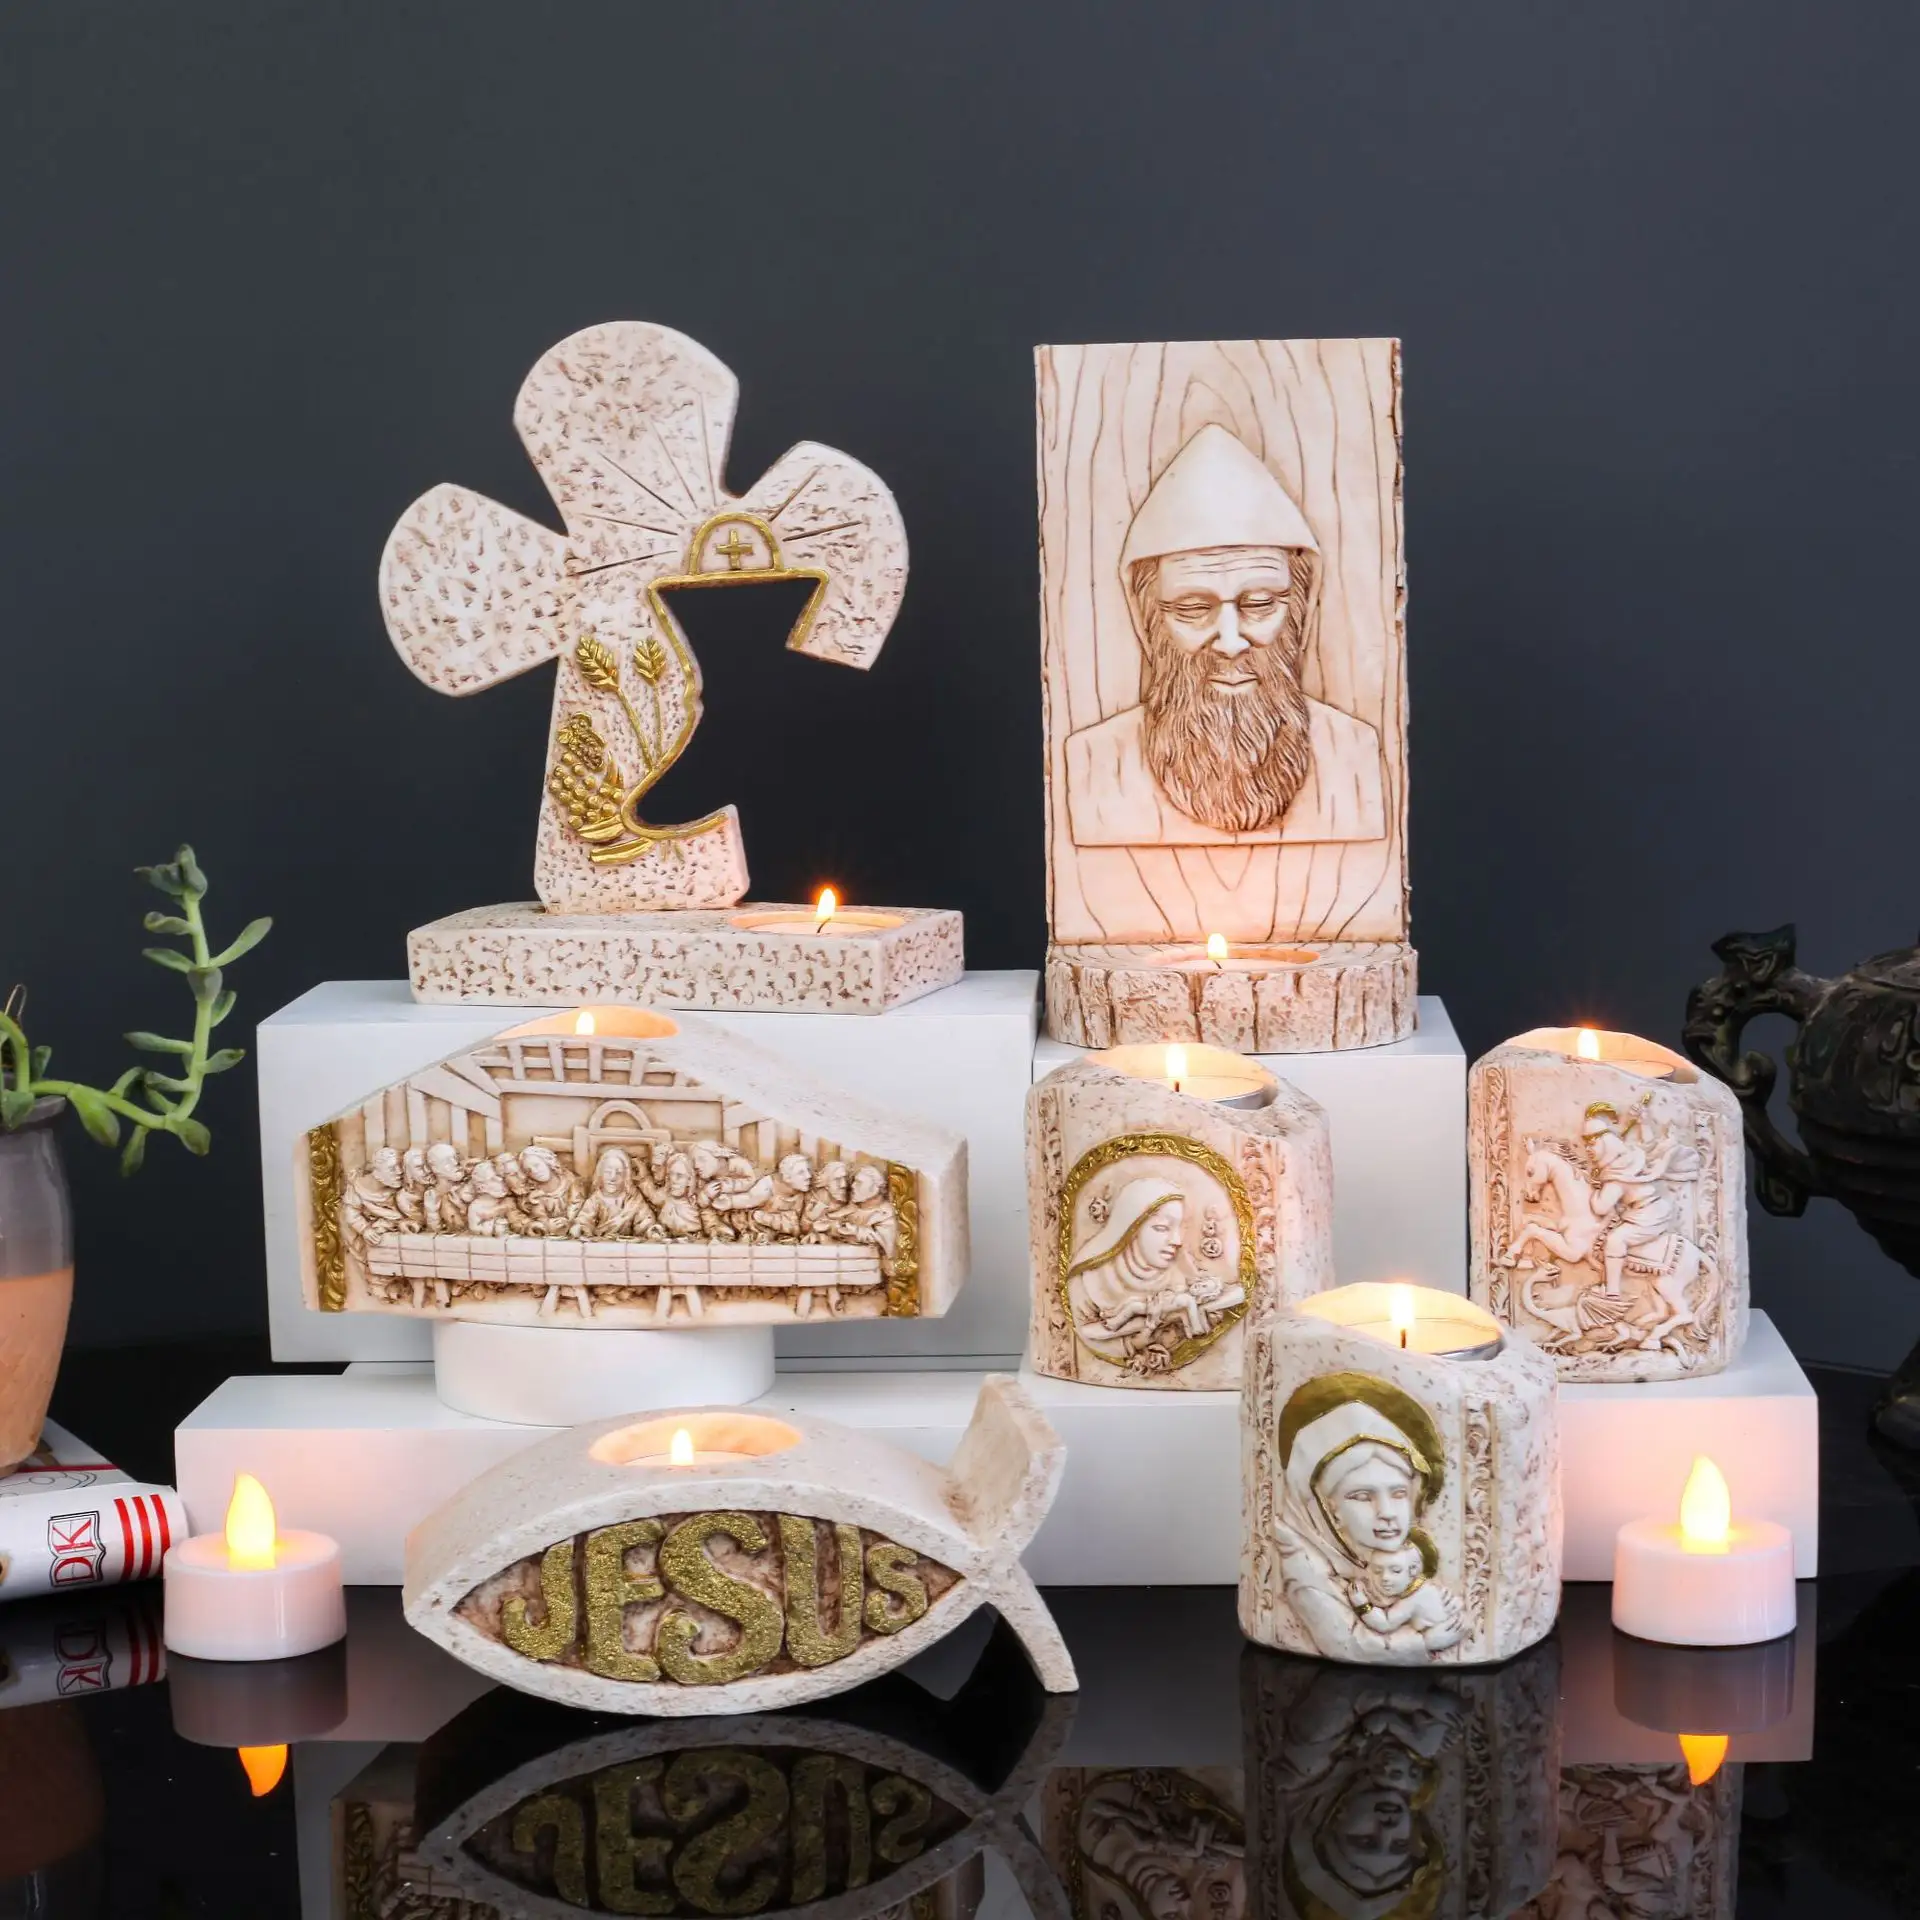 KOMI ev süslemeleri Polyresin dini çapraz bakire Mary papa heykel şamdan heykelleri mumluk Bar zanaat hediye